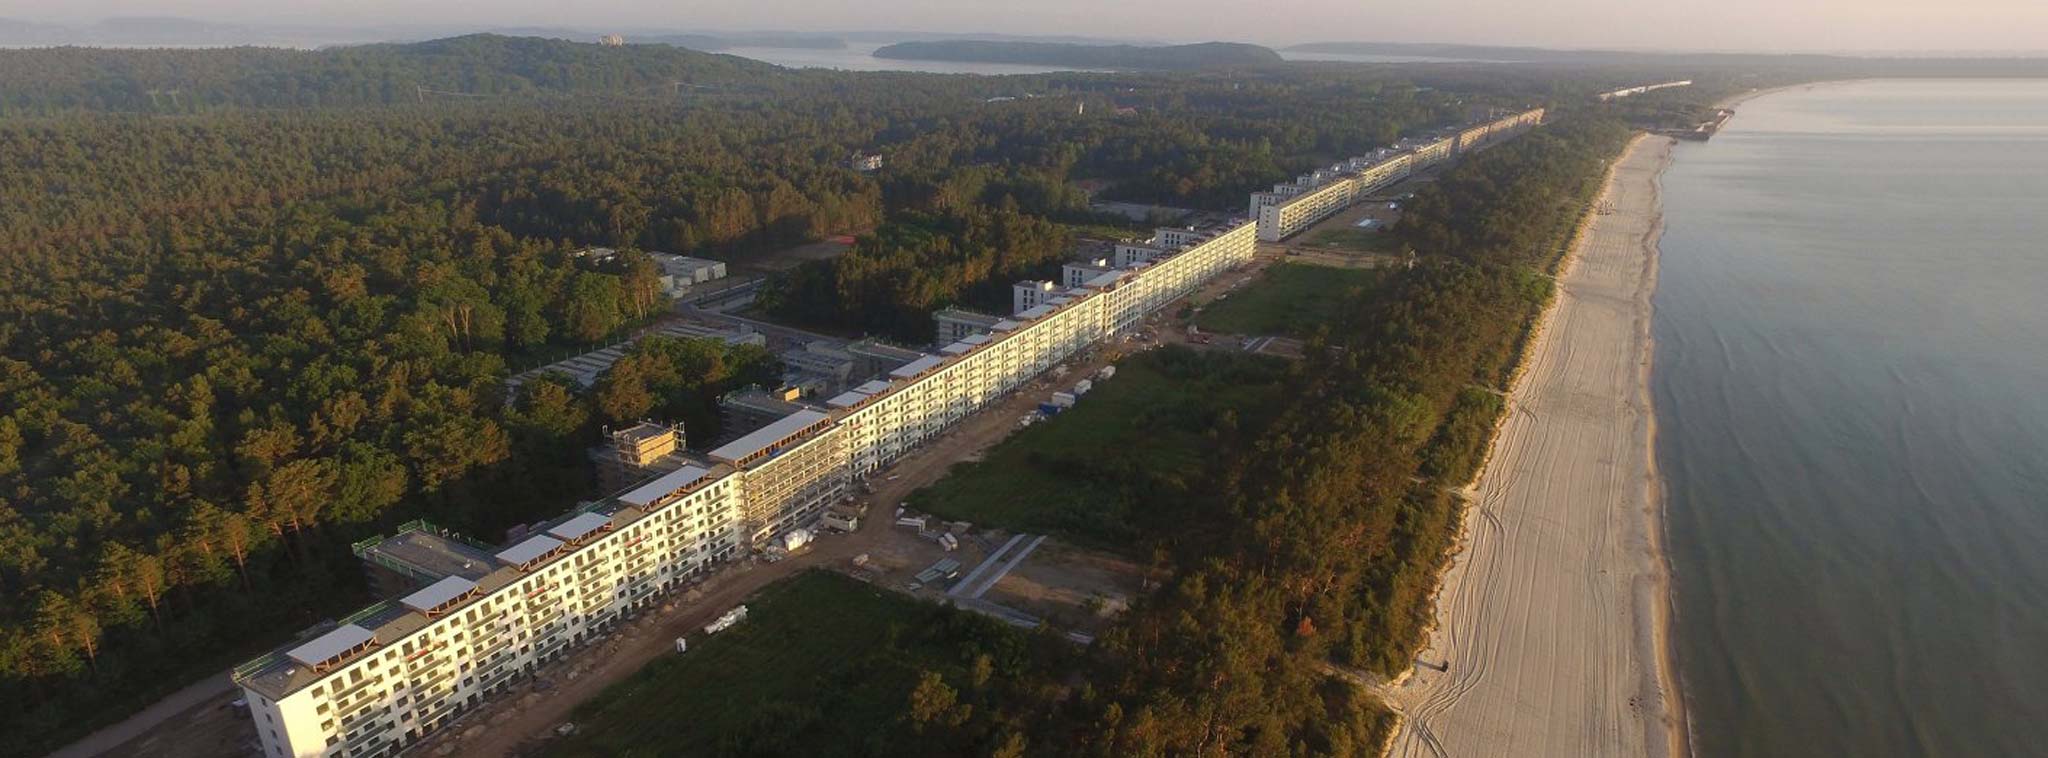 Cải tạo khu nghỉ dưỡng dài gần 5 km của Hitler thành khách sạn, căn hộ cao cấp